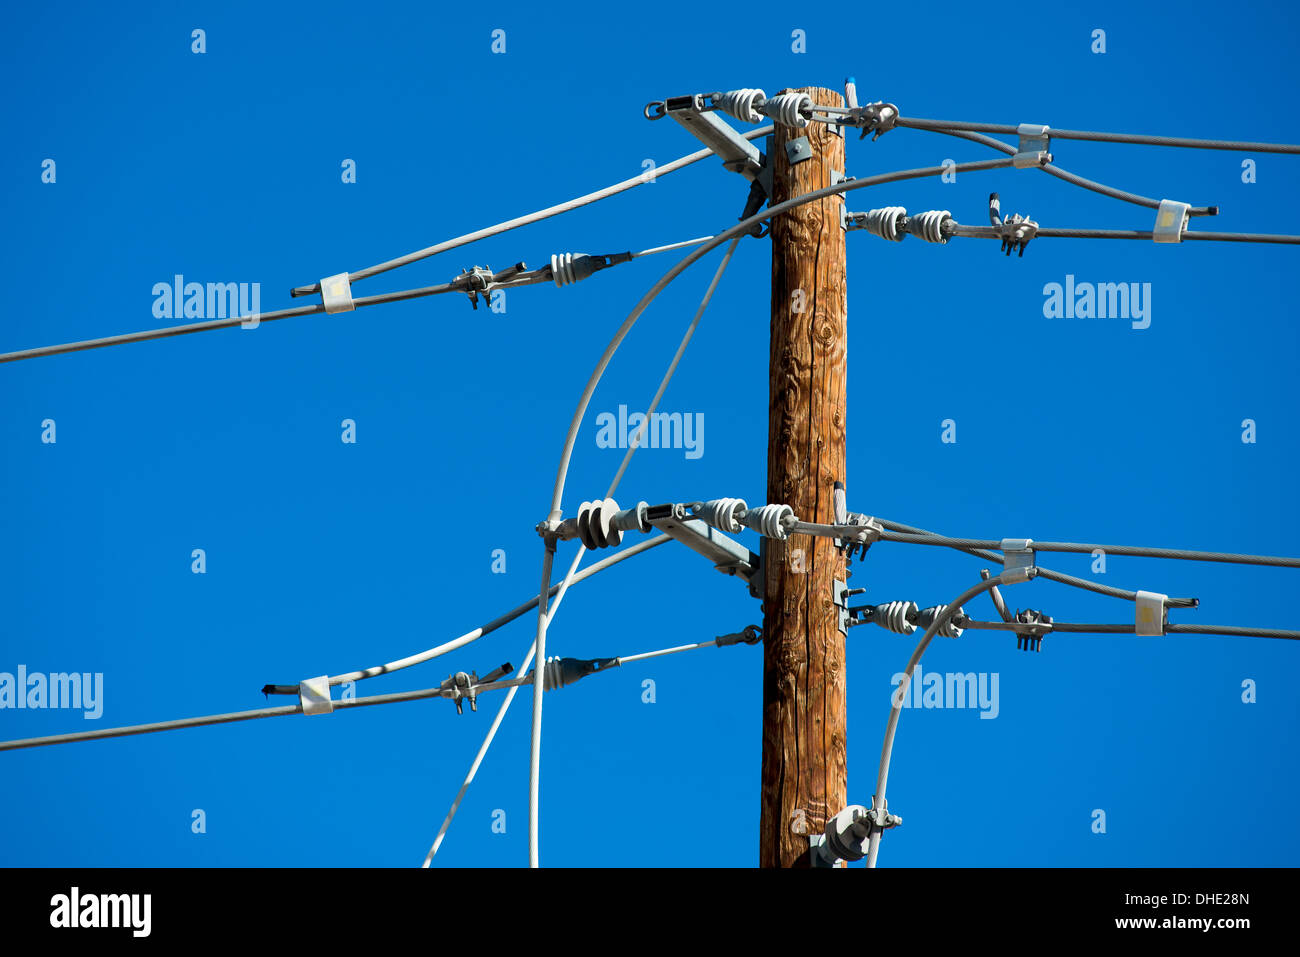 Detailliertes Bild der elektrischen Leitungen und Anschlüsse auf einem hölzernen Pfosten Stockfoto